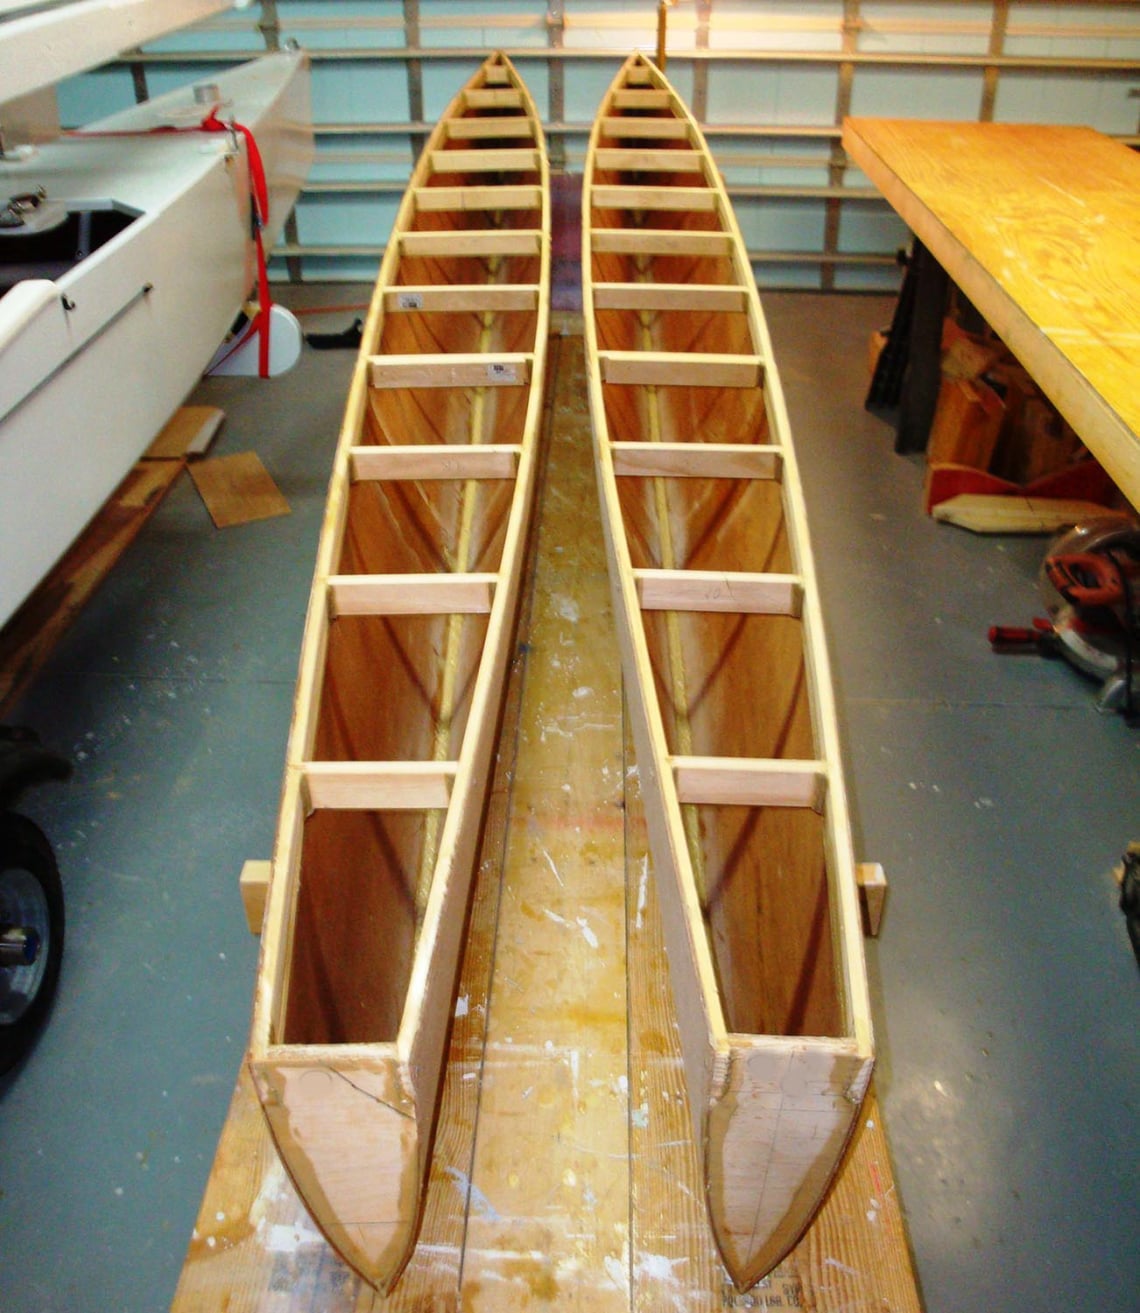 10 847 видео по запросу Деревянные лодки доступны в рамках роялти-фри лицензии